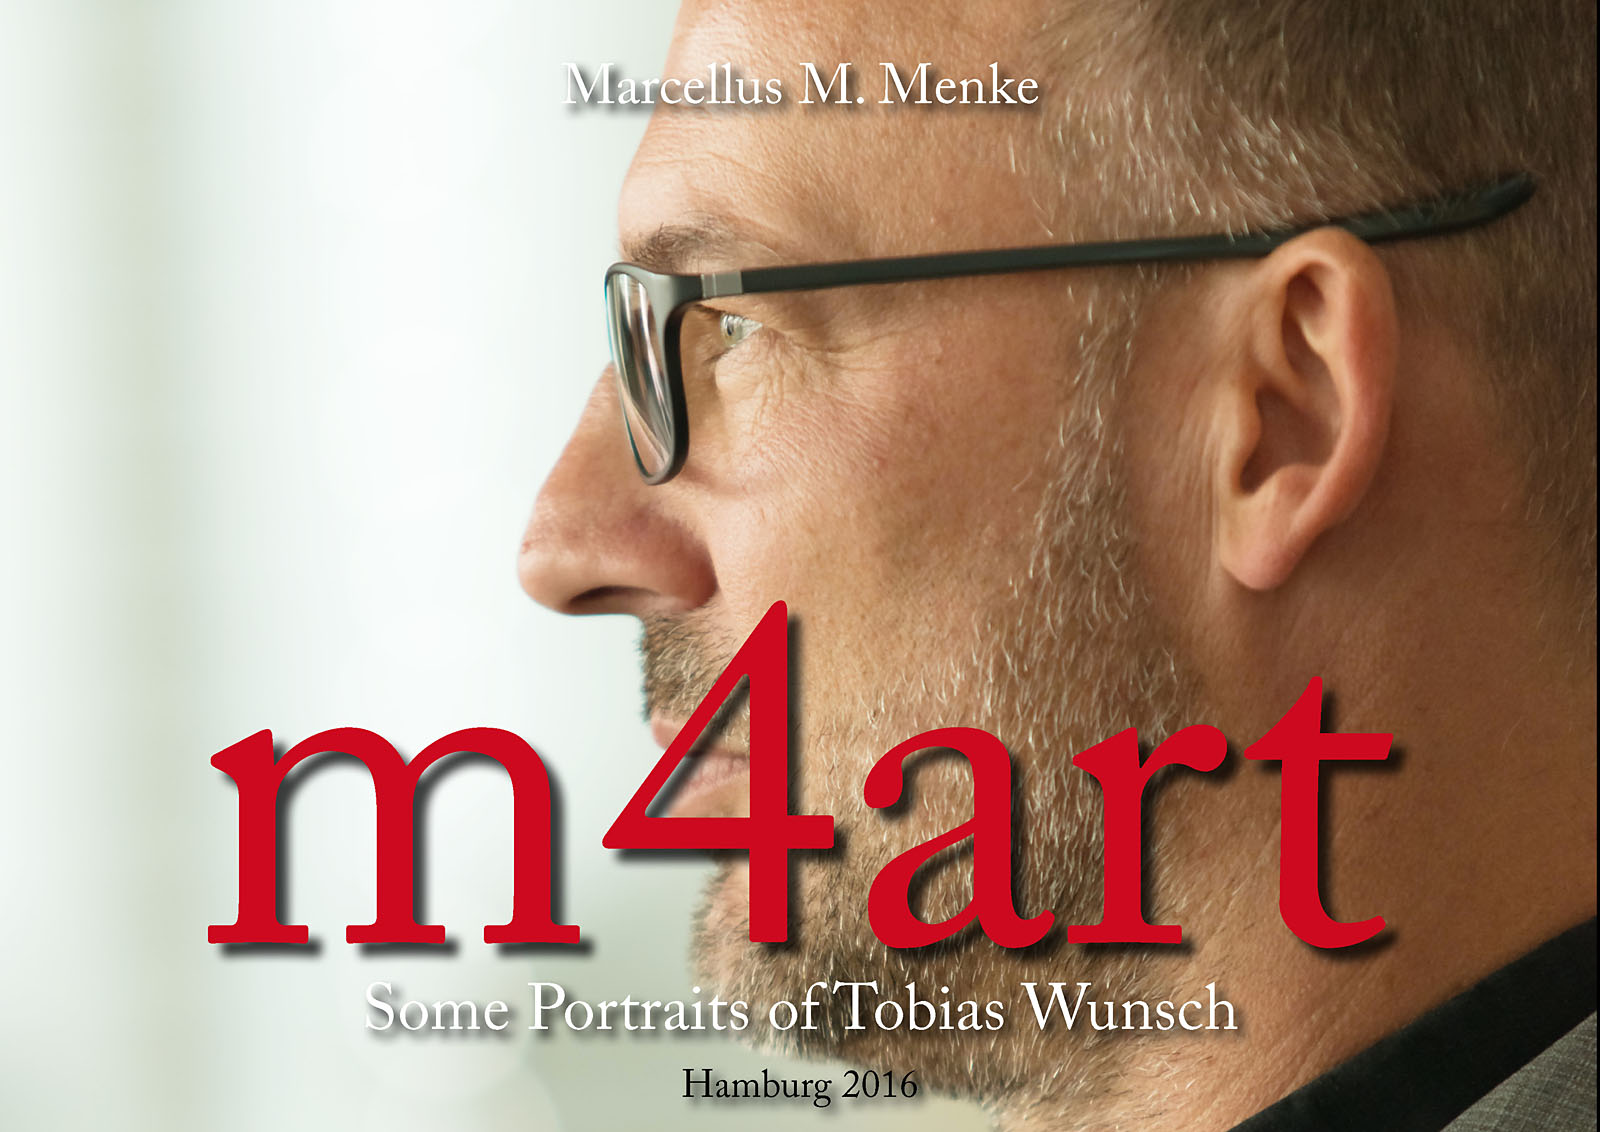 Marcellus M. Menke: Some Portraits of Tobias Wunsch, m4art screenBook, Hamburg und Köln 2016, Seite 1